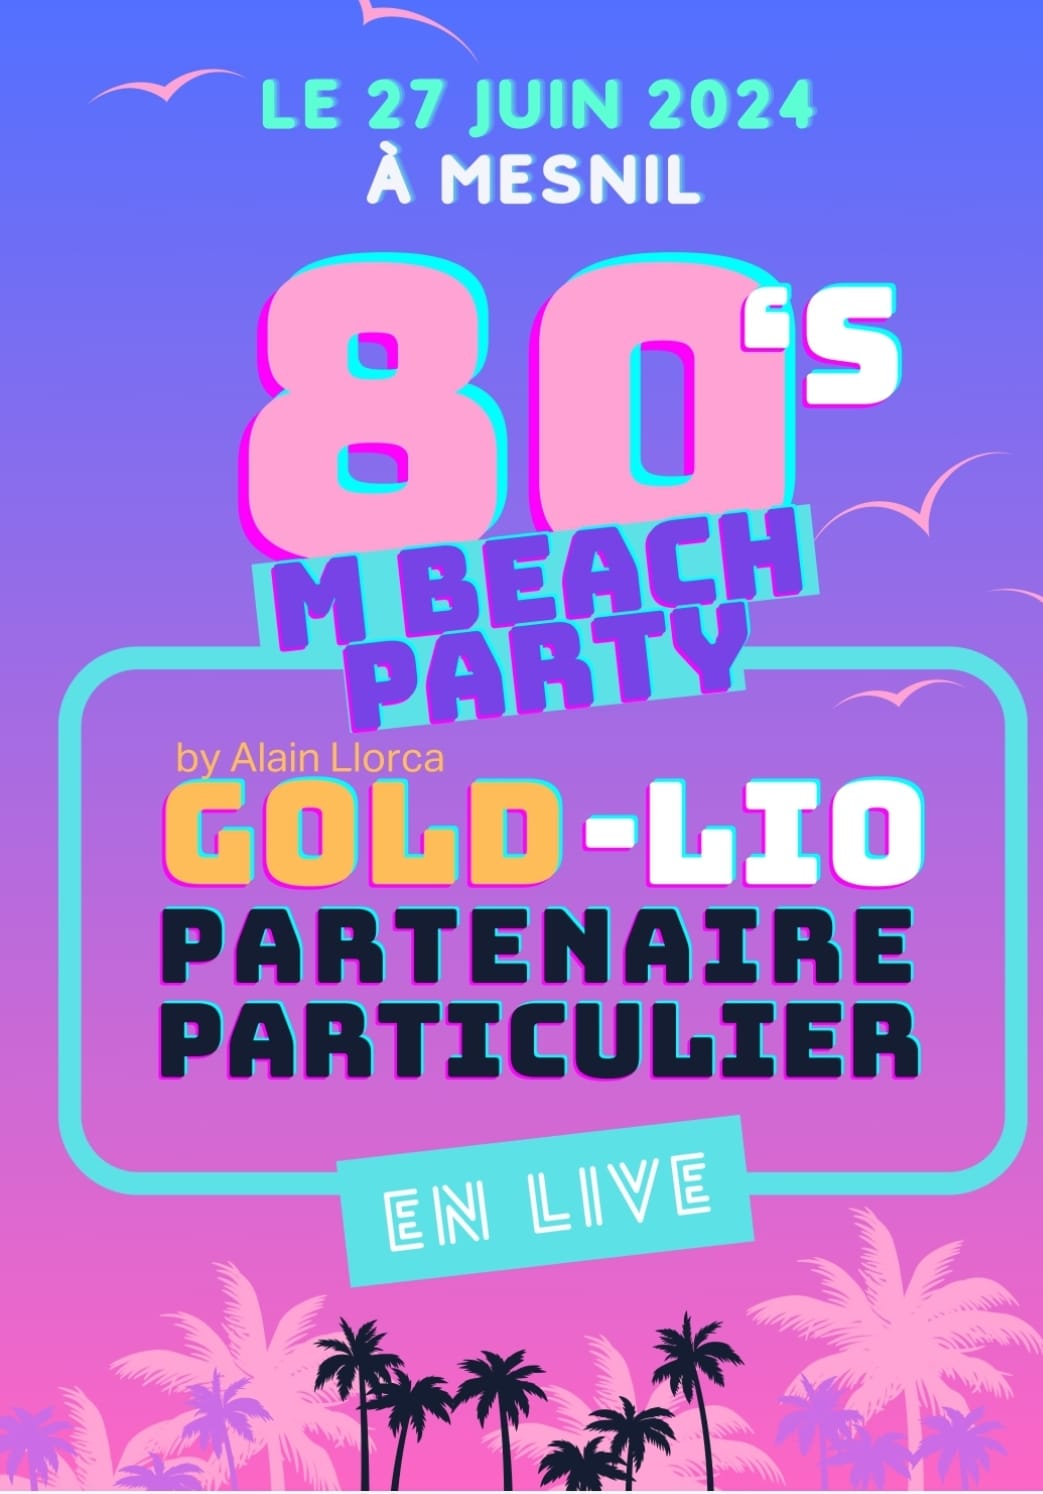 M Beach Party 80 : Lio, Gold & Partenaire Particulier Le 27 juin 2024